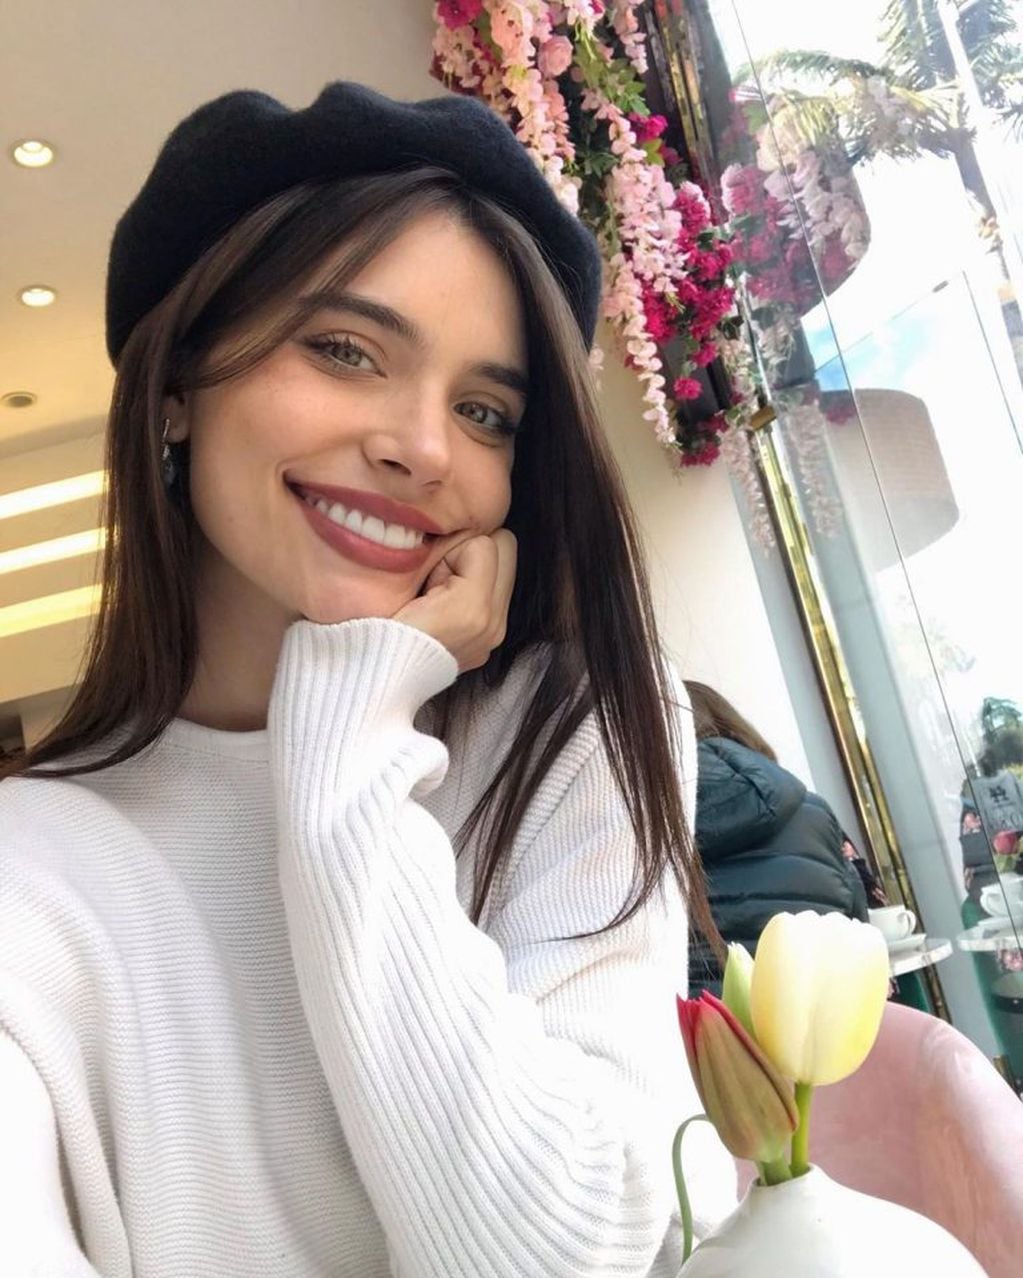 Eva de Dominici es una de las actrices más queridas. (Instagram/@dedominicieva)